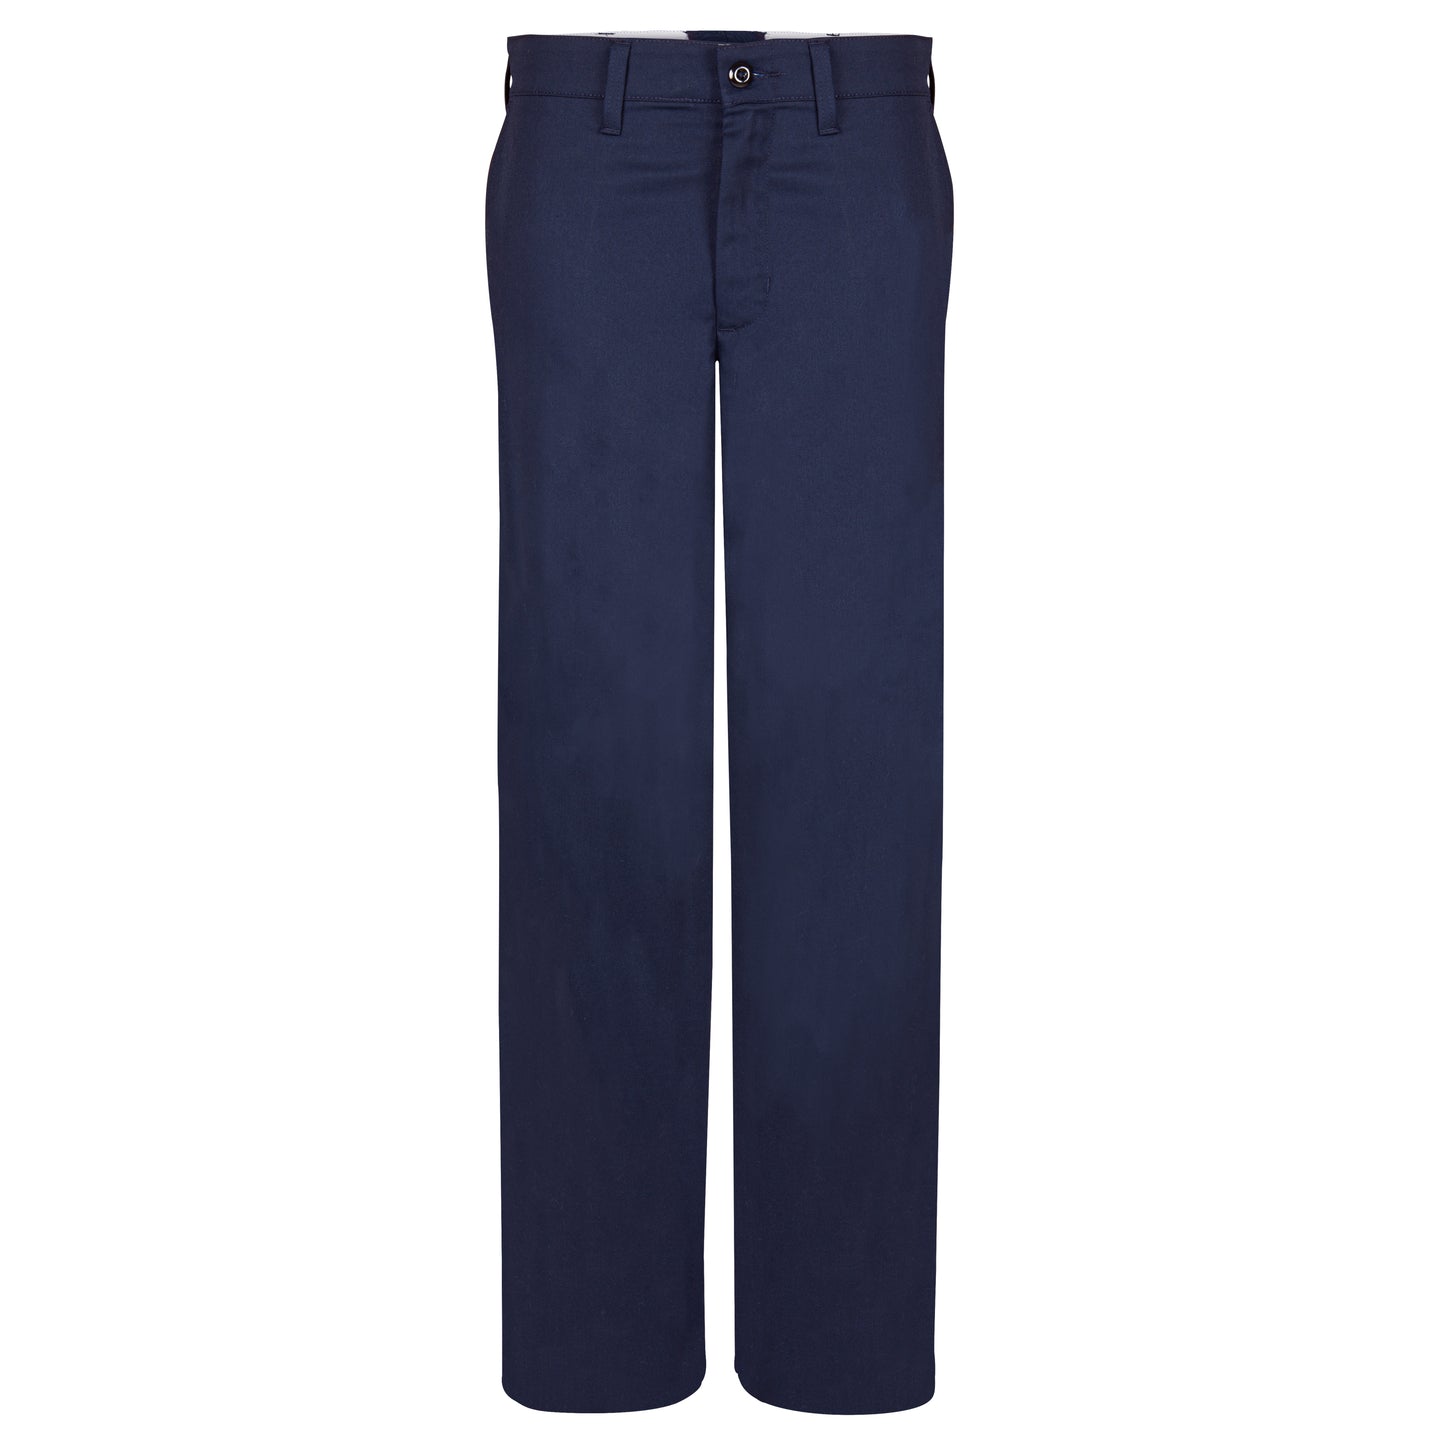 Men's Work Pants, 4 Pockets (2 Side, 2 Back), Unhemmed,  Navy Blue